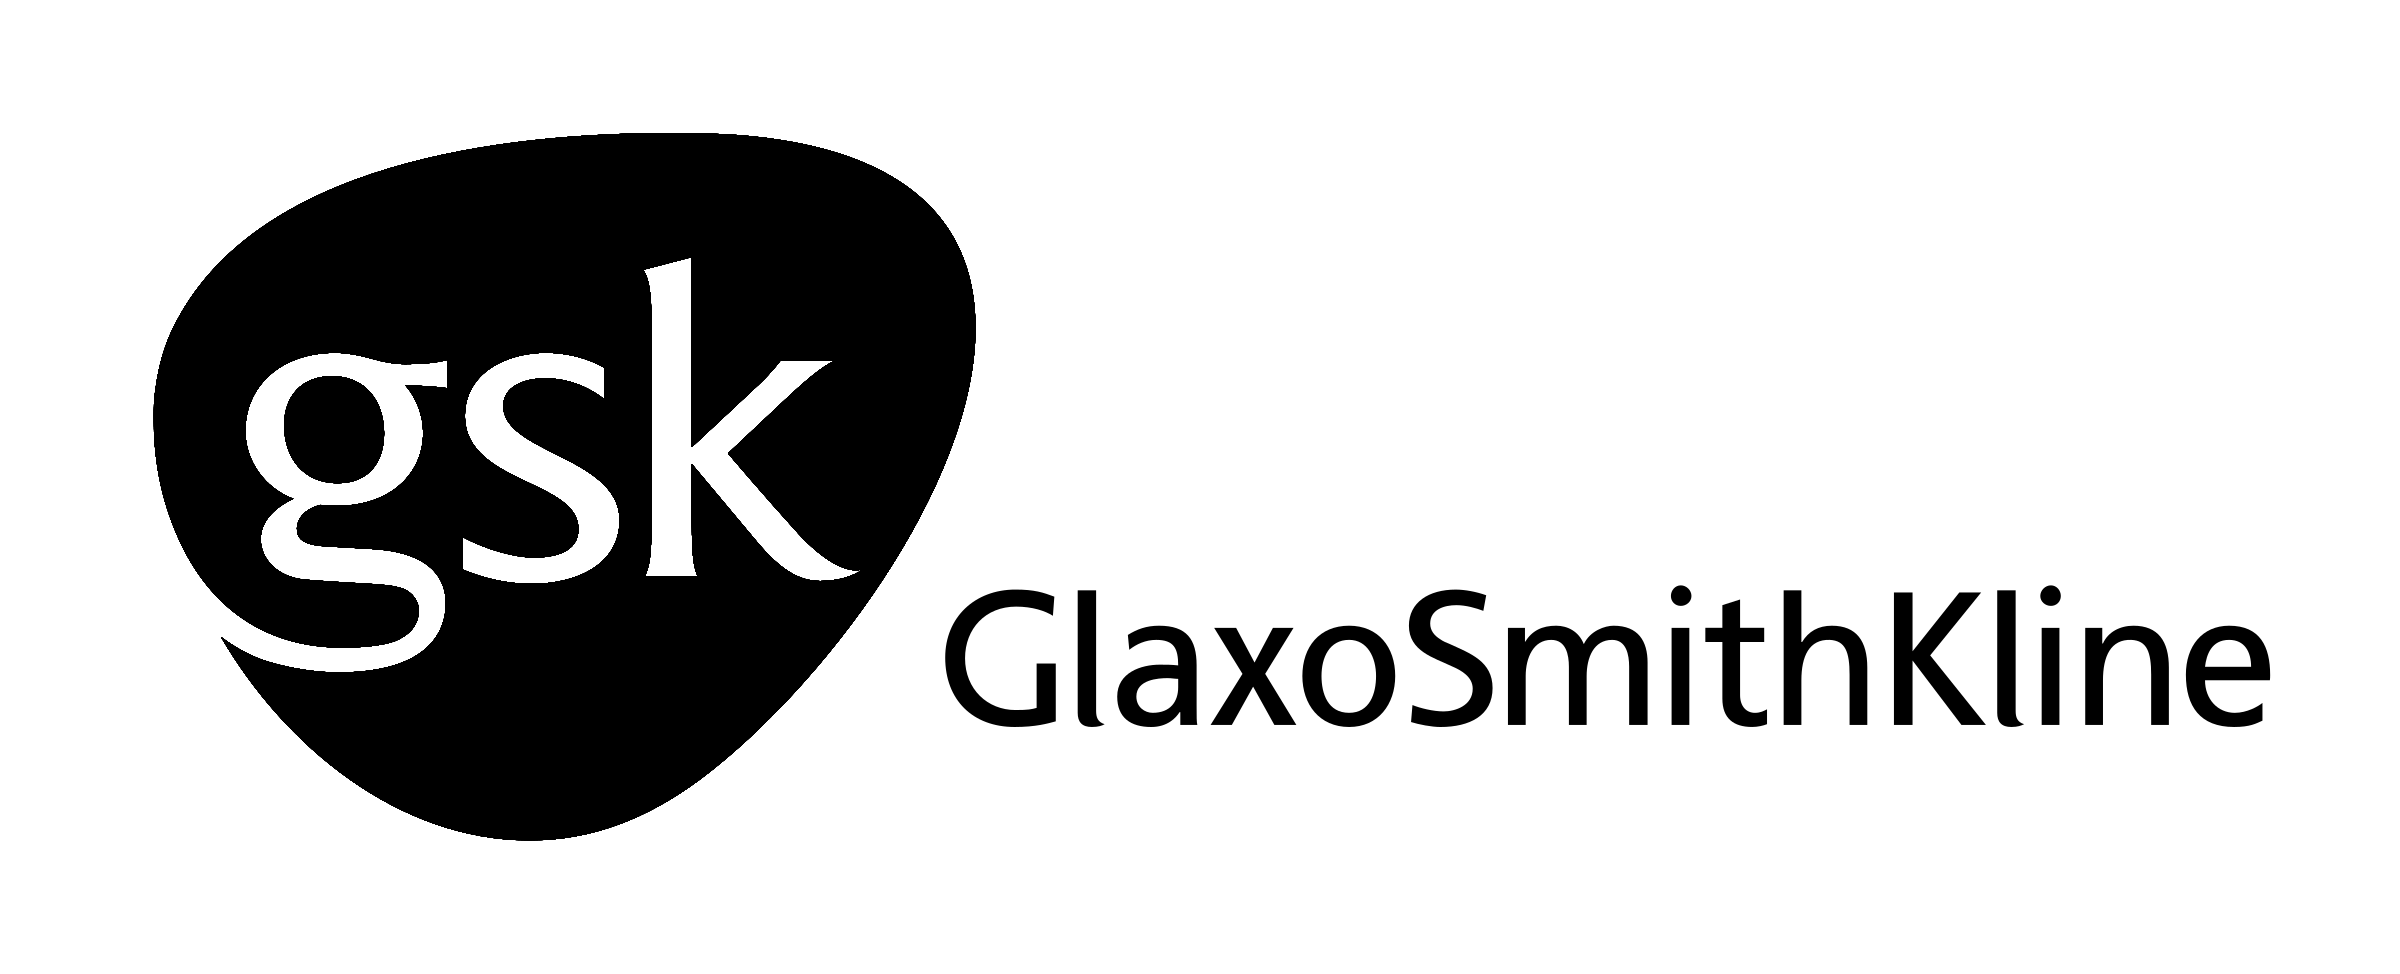 glaxosmithkline-logo-black-and-white.png